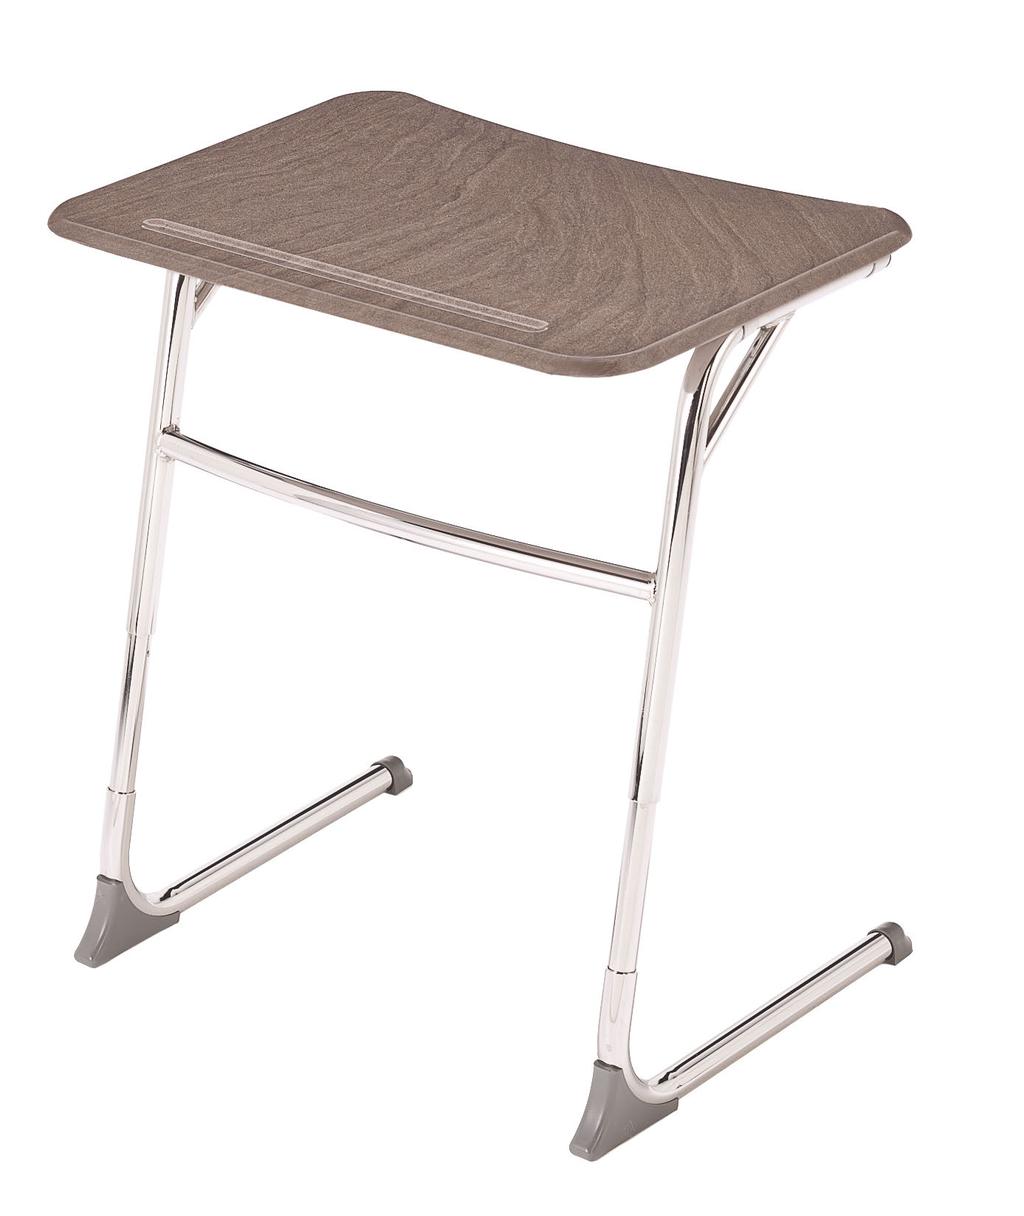 3550 Series - Adjustable Cantilever Desk D ESK S SERIES Adjustable version of our best selling cantilever desk.